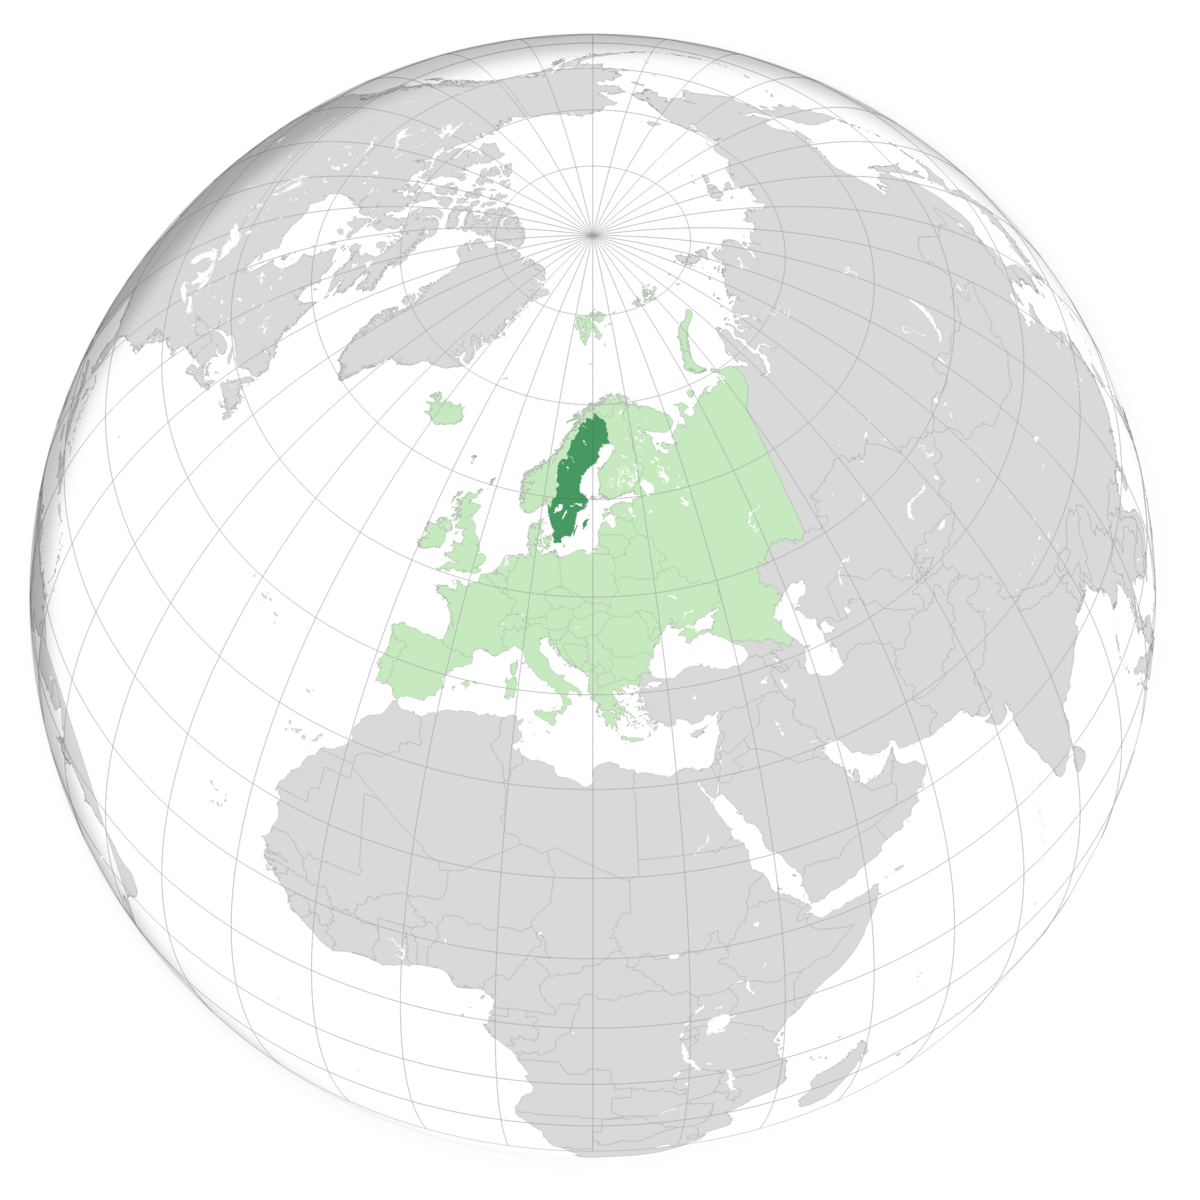 plassering av Sverige på jordkloden. Kart